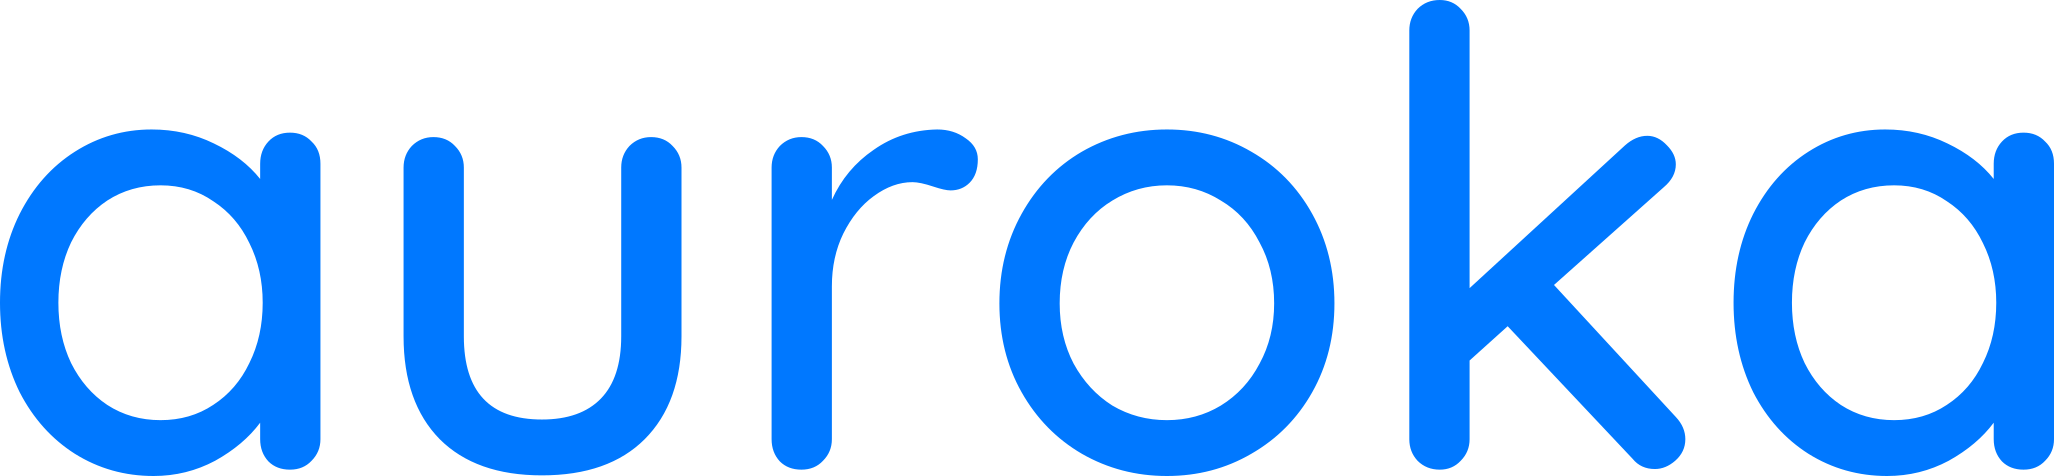 logo-blue-transparent